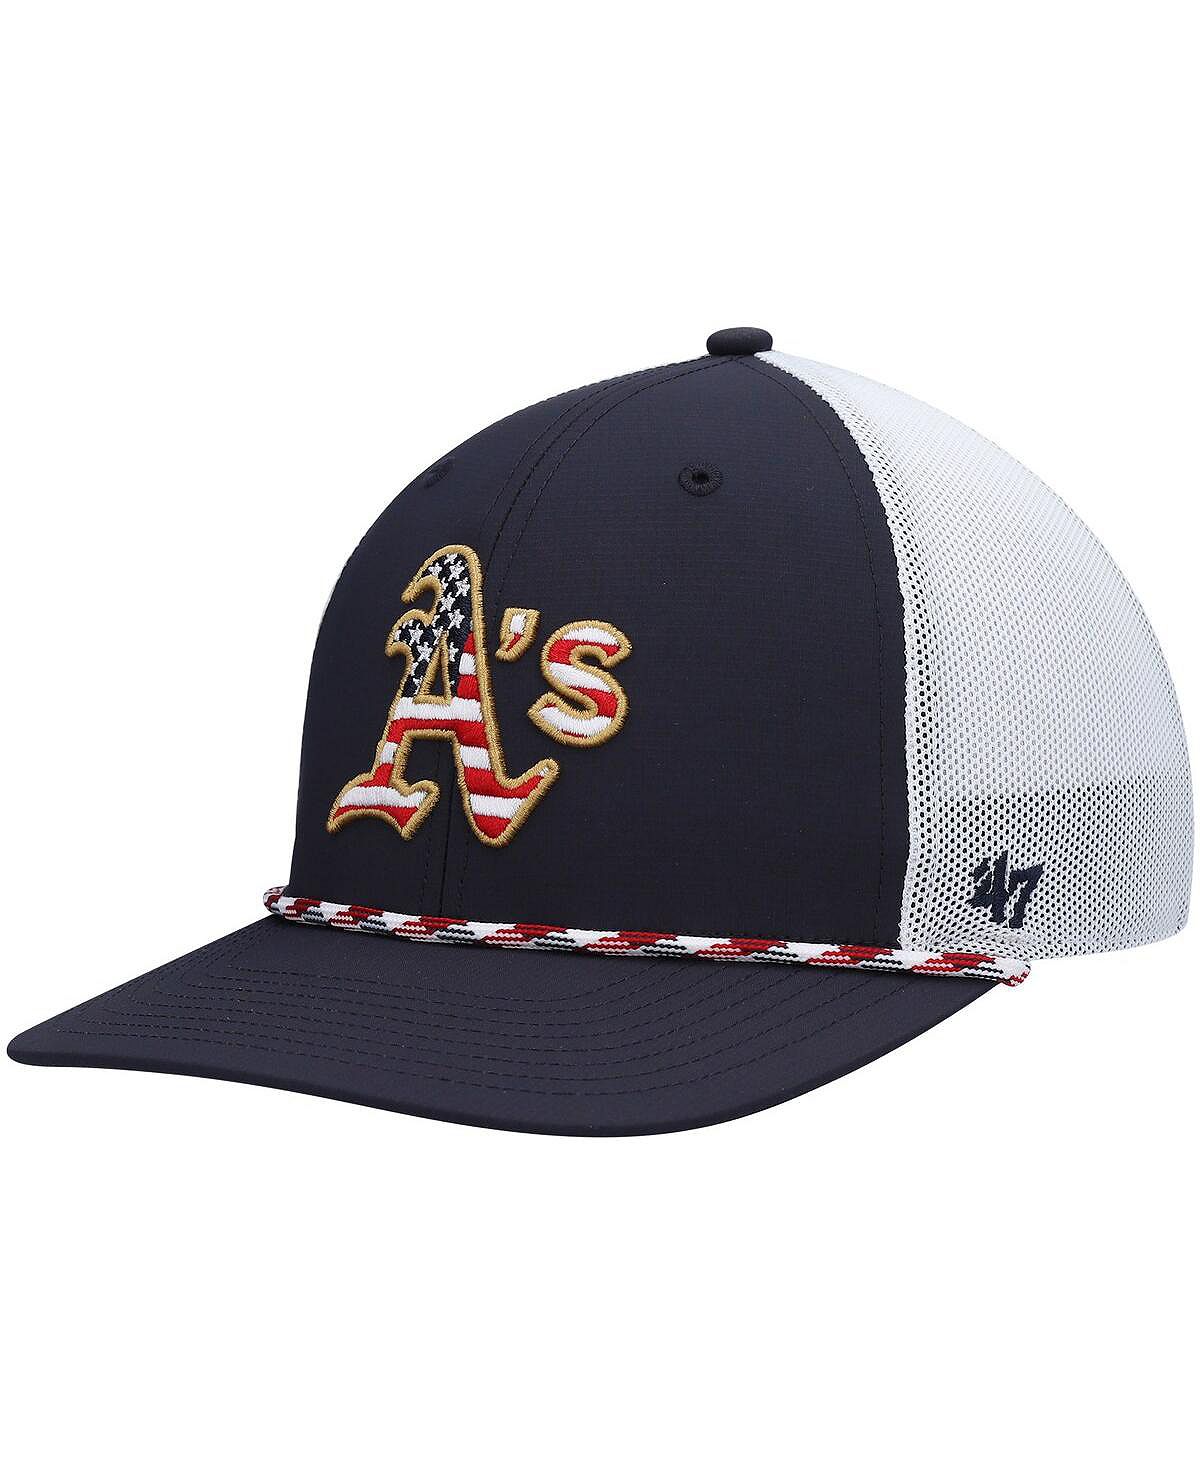 Мужская темно-синяя, белая кепка с флагом Oakland Athletics '47 '47 '47 Brand